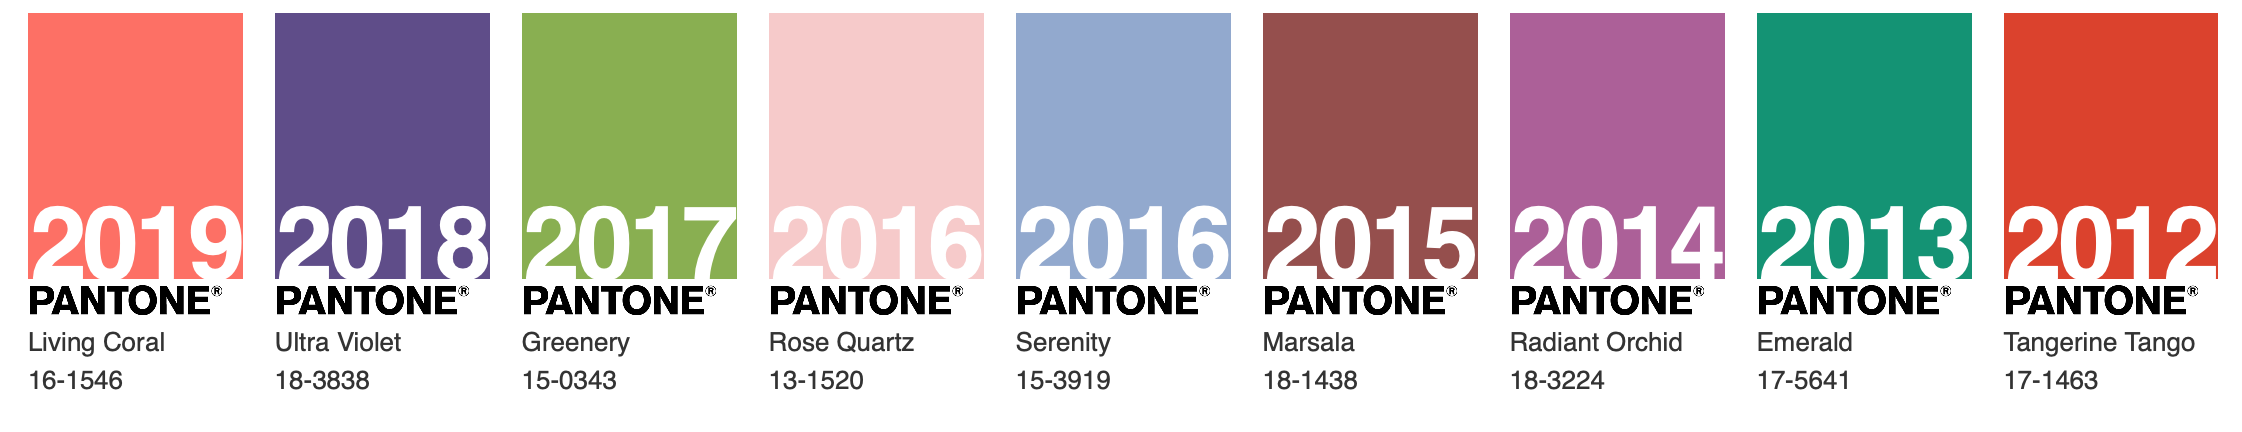 PANTONE ogłosił kolor roku 2020 2020 Screenshot 2020 01 27 at 10.16.31 AM